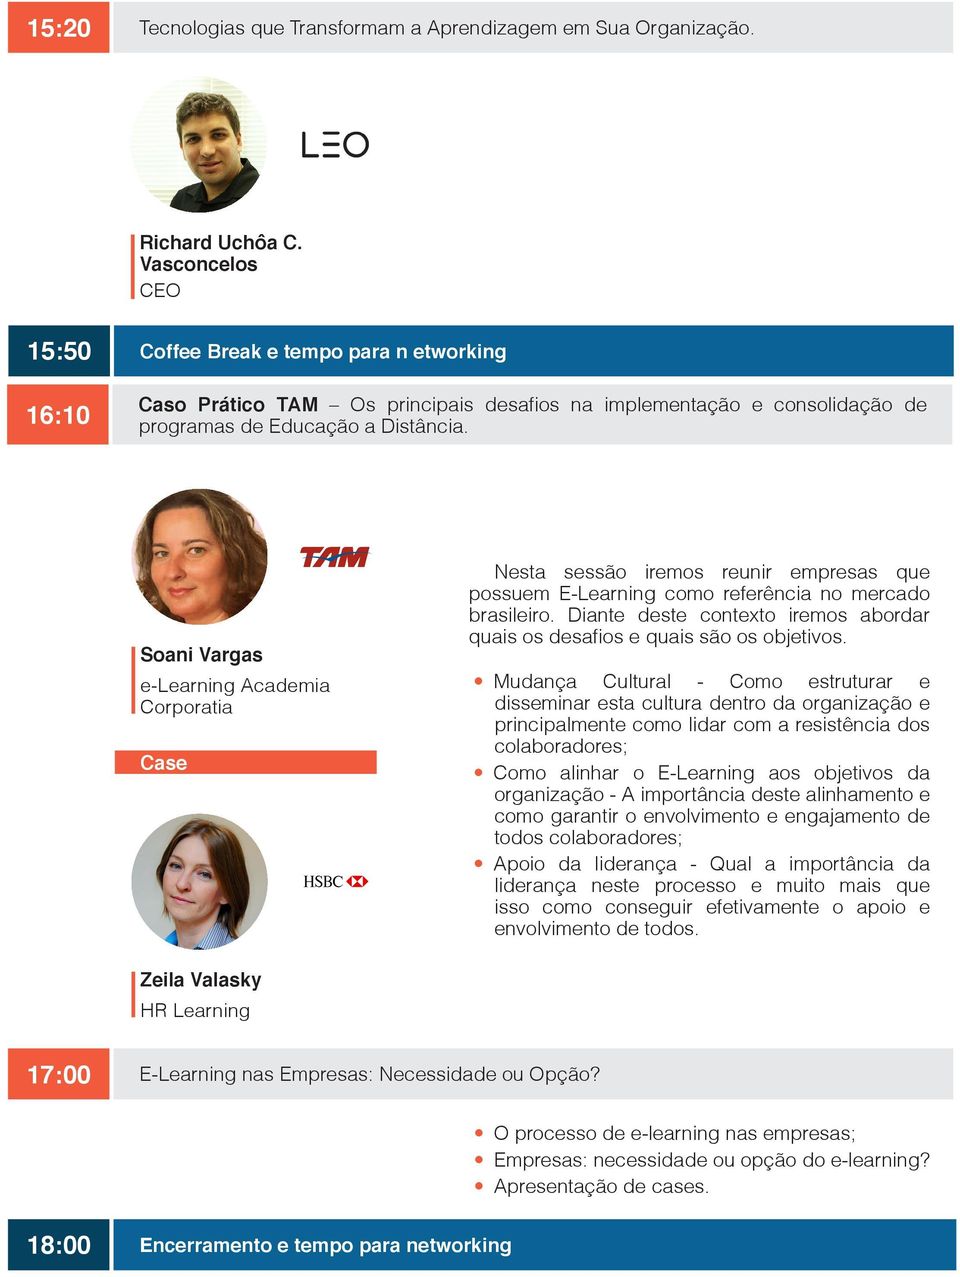 Soani Vargas e-learning Academia Corporatia Case Nesta sessão iremos reunir empresas que possuem E-Learning como referência no mercado brasileiro.